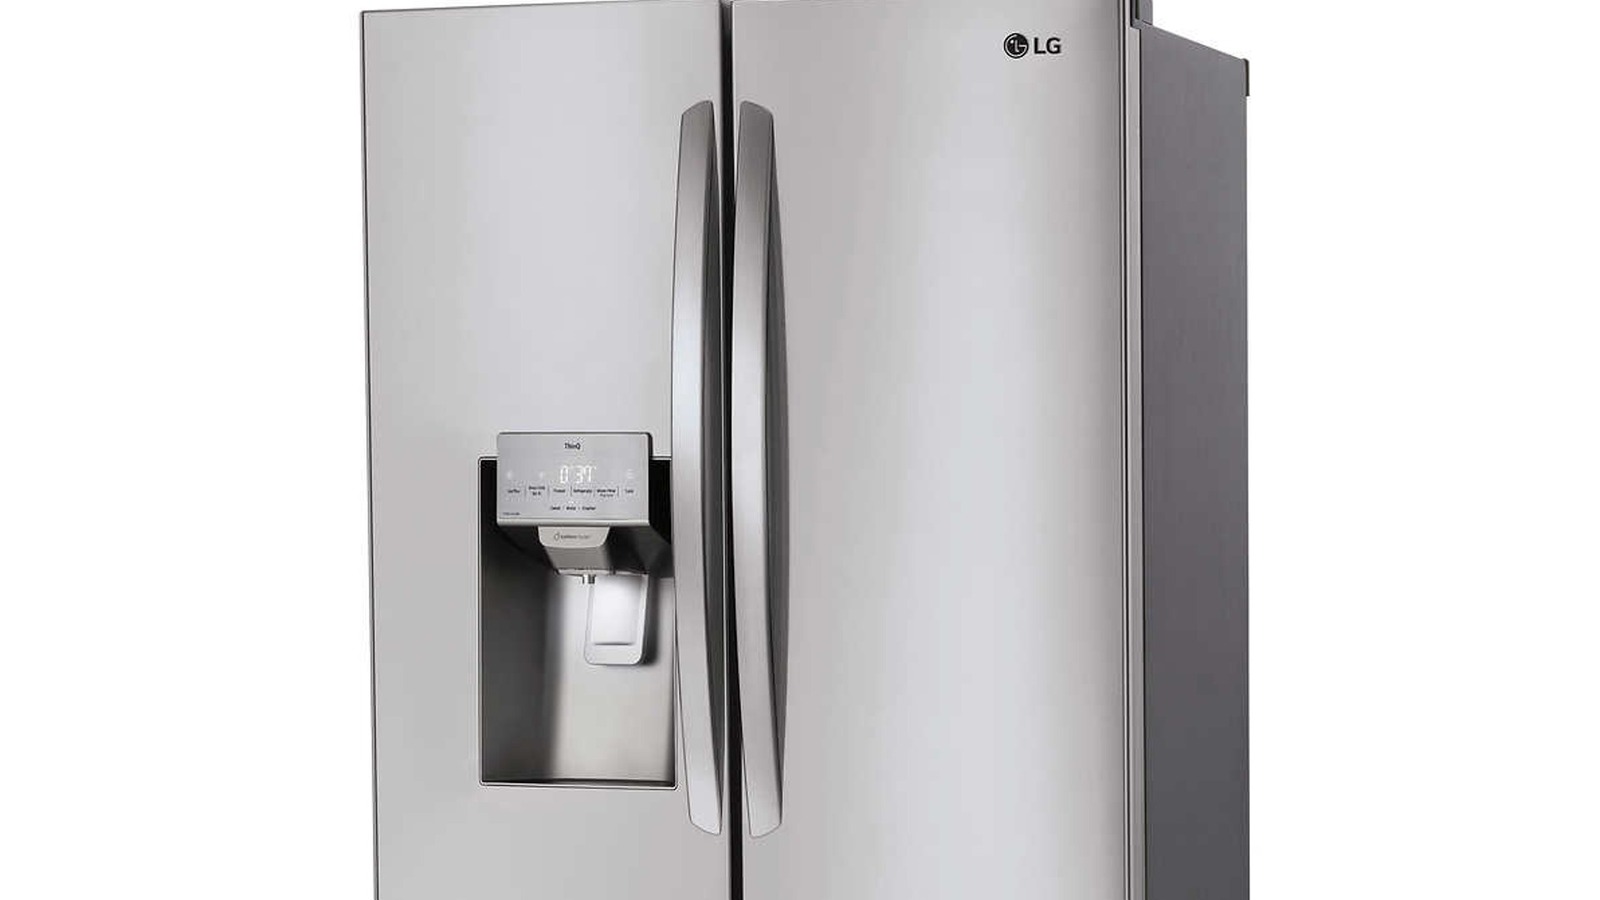 Los compradores de Costco del refrigerador inteligente LG pueden ahorrar $ 900 ahora mismo